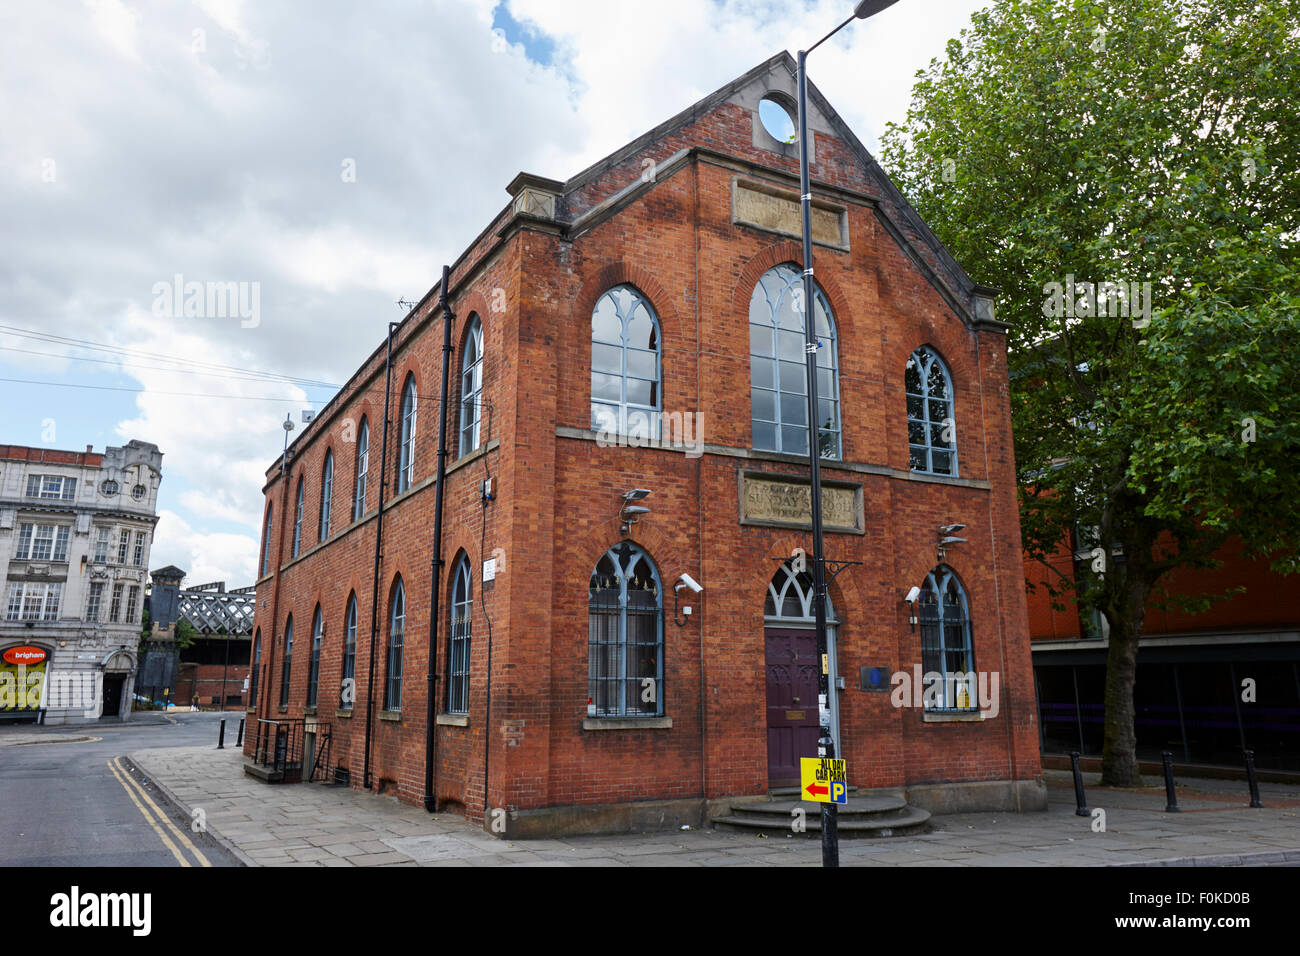 St matthews ancien bâtiment de l'école du dimanche le castlefield Manchester England UK Banque D'Images